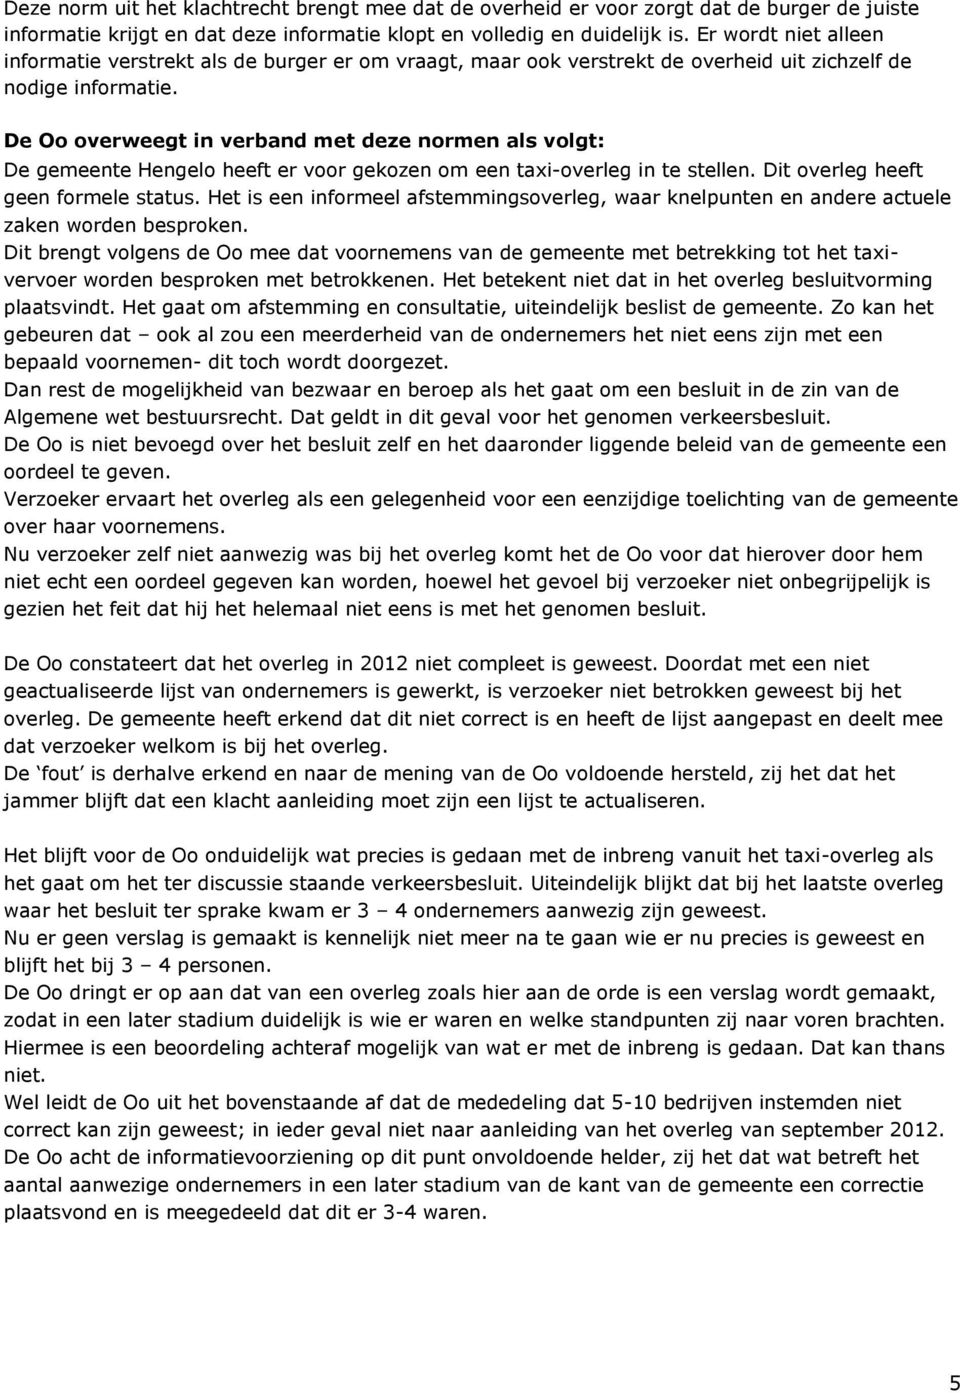 De Oo overweegt in verband met deze normen als volgt: De gemeente Hengelo heeft er voor gekozen om een taxi-overleg in te stellen. Dit overleg heeft geen formele status.